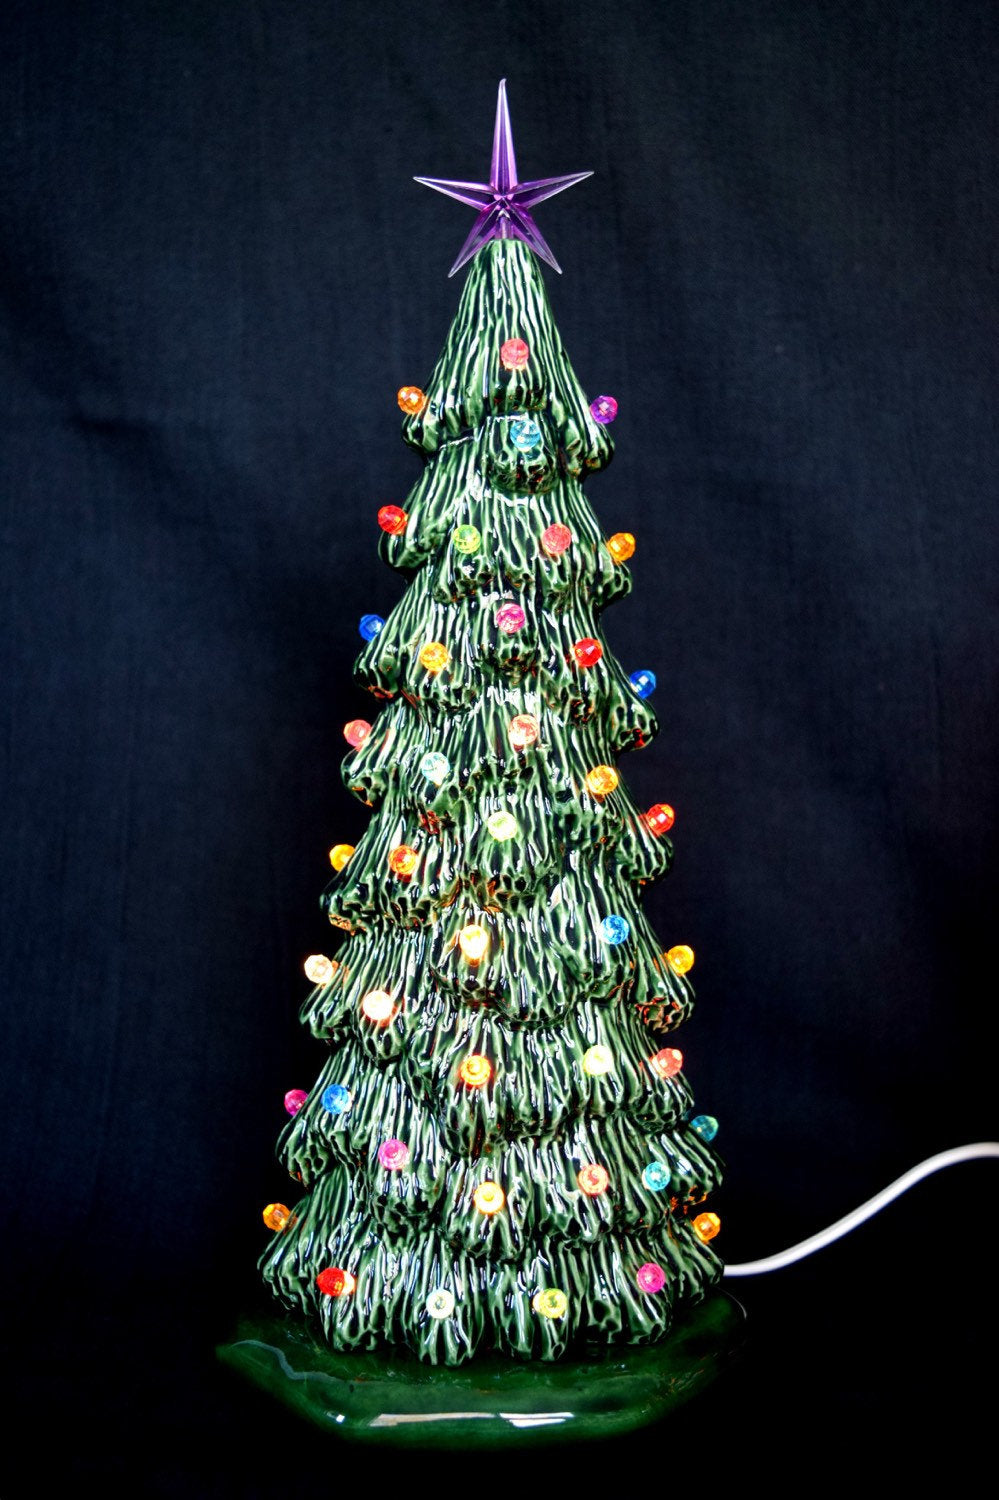 Pastel-Lit Ceramic Christmas Tree